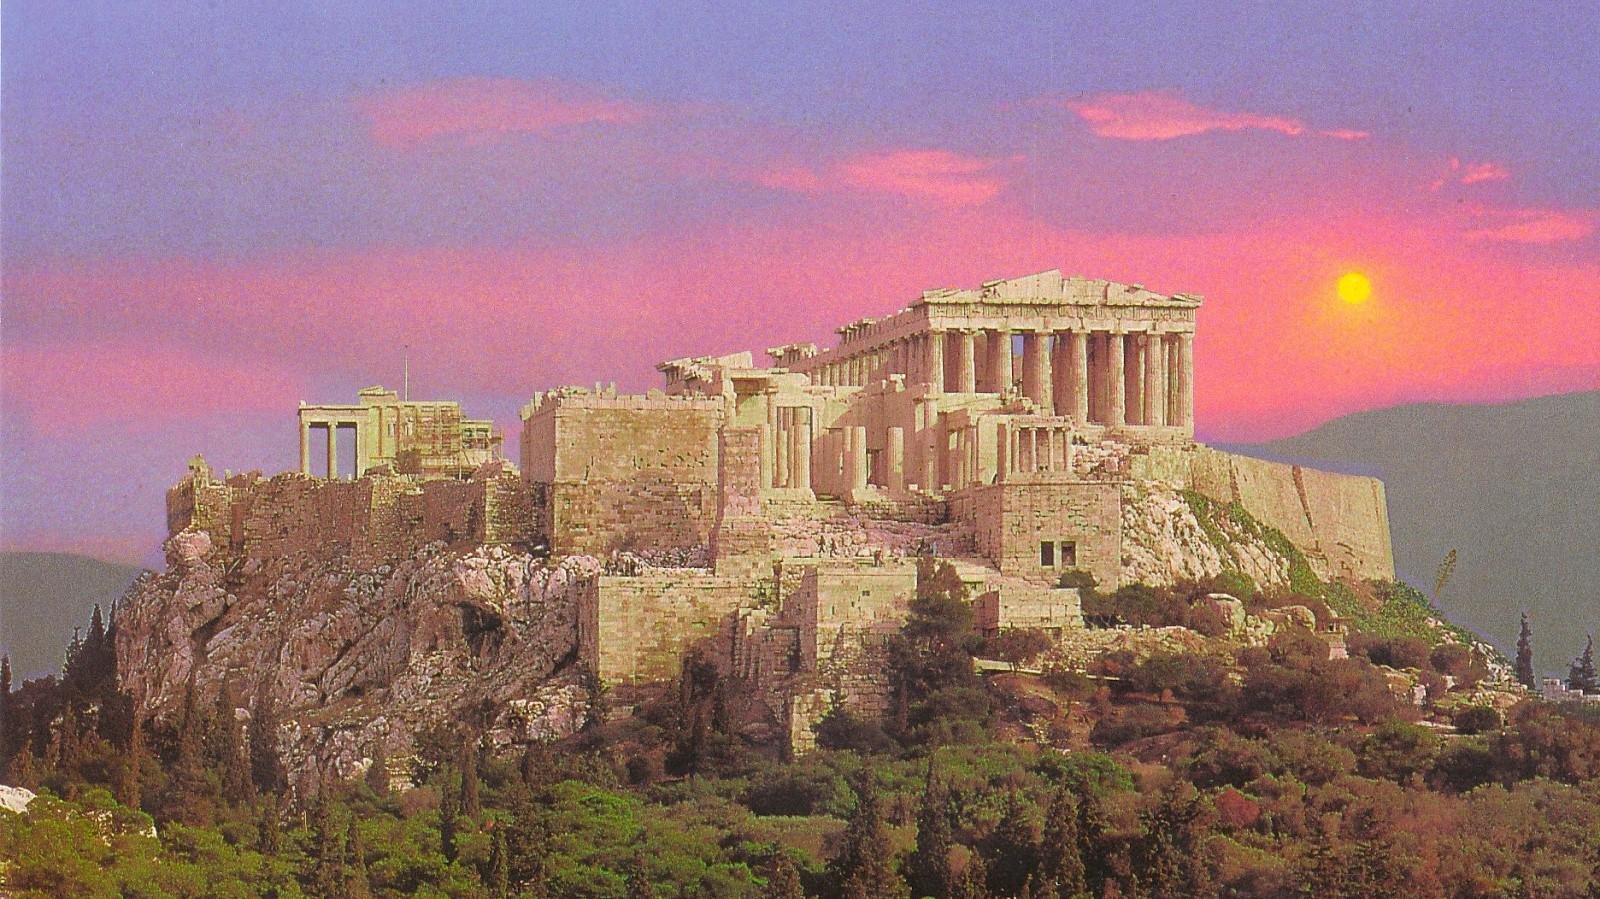 акрополь в древней греции